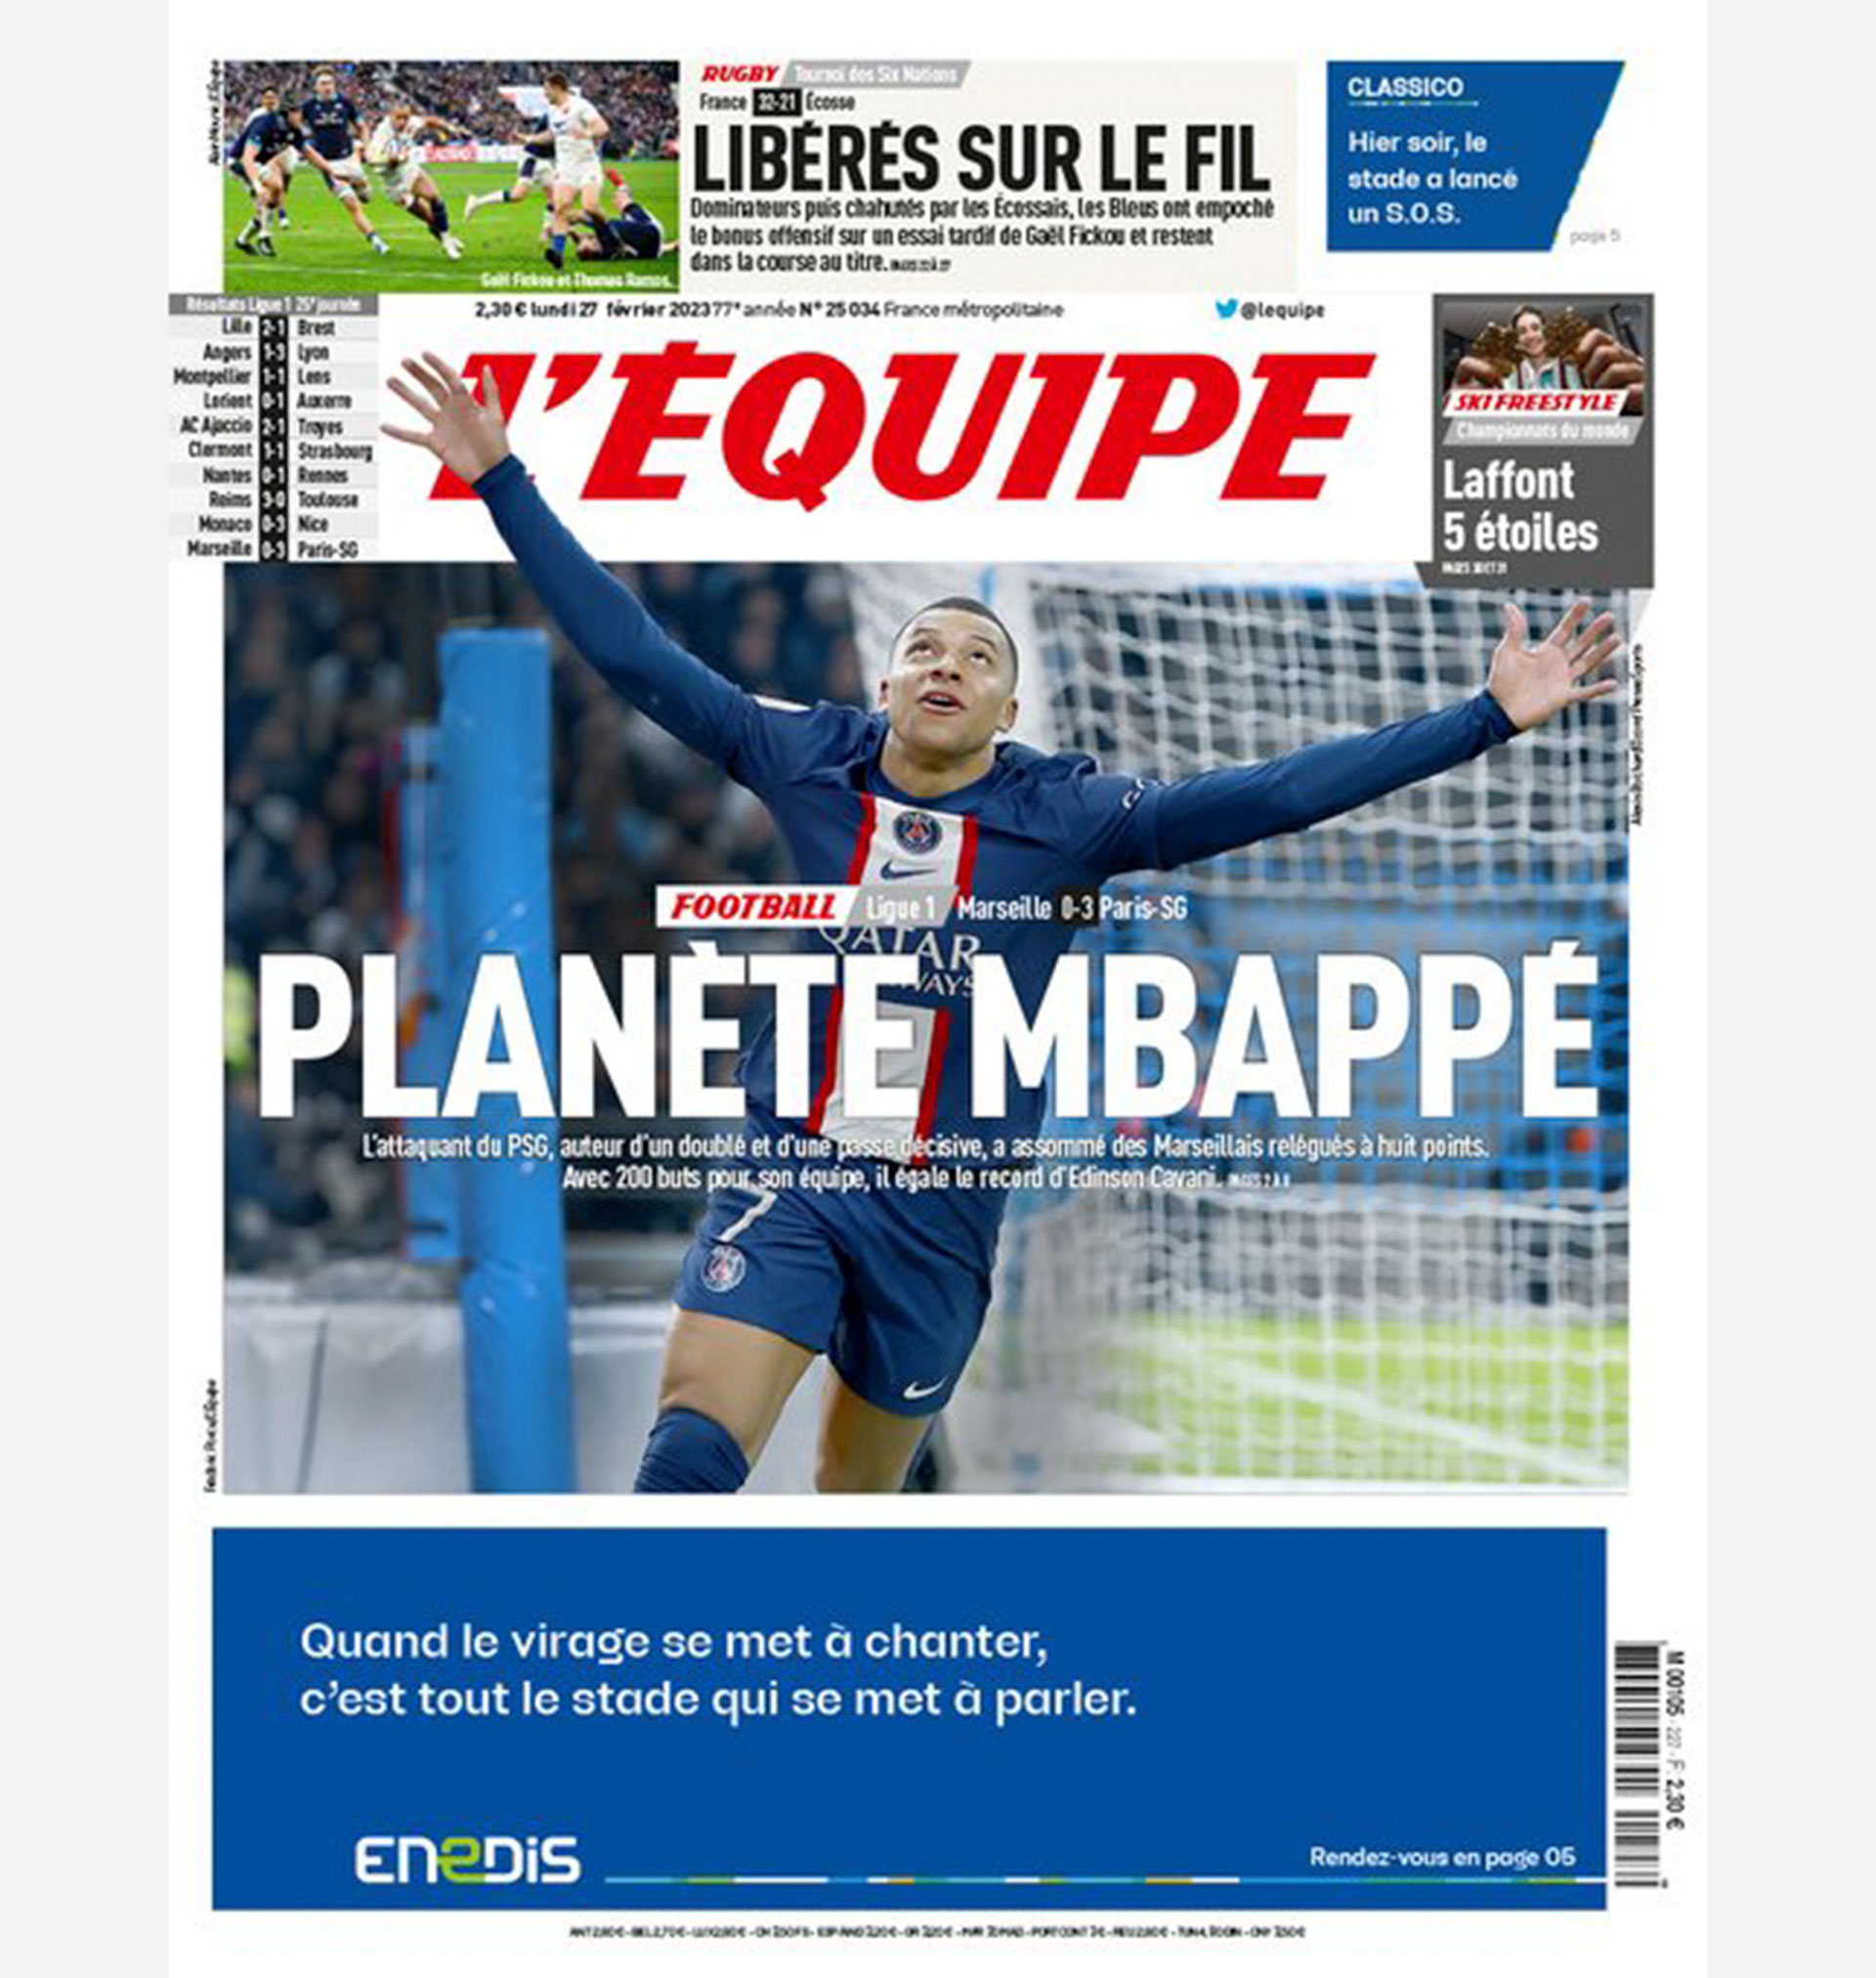 "Planeta Mbappé", seleccionó L'Equipe como portada